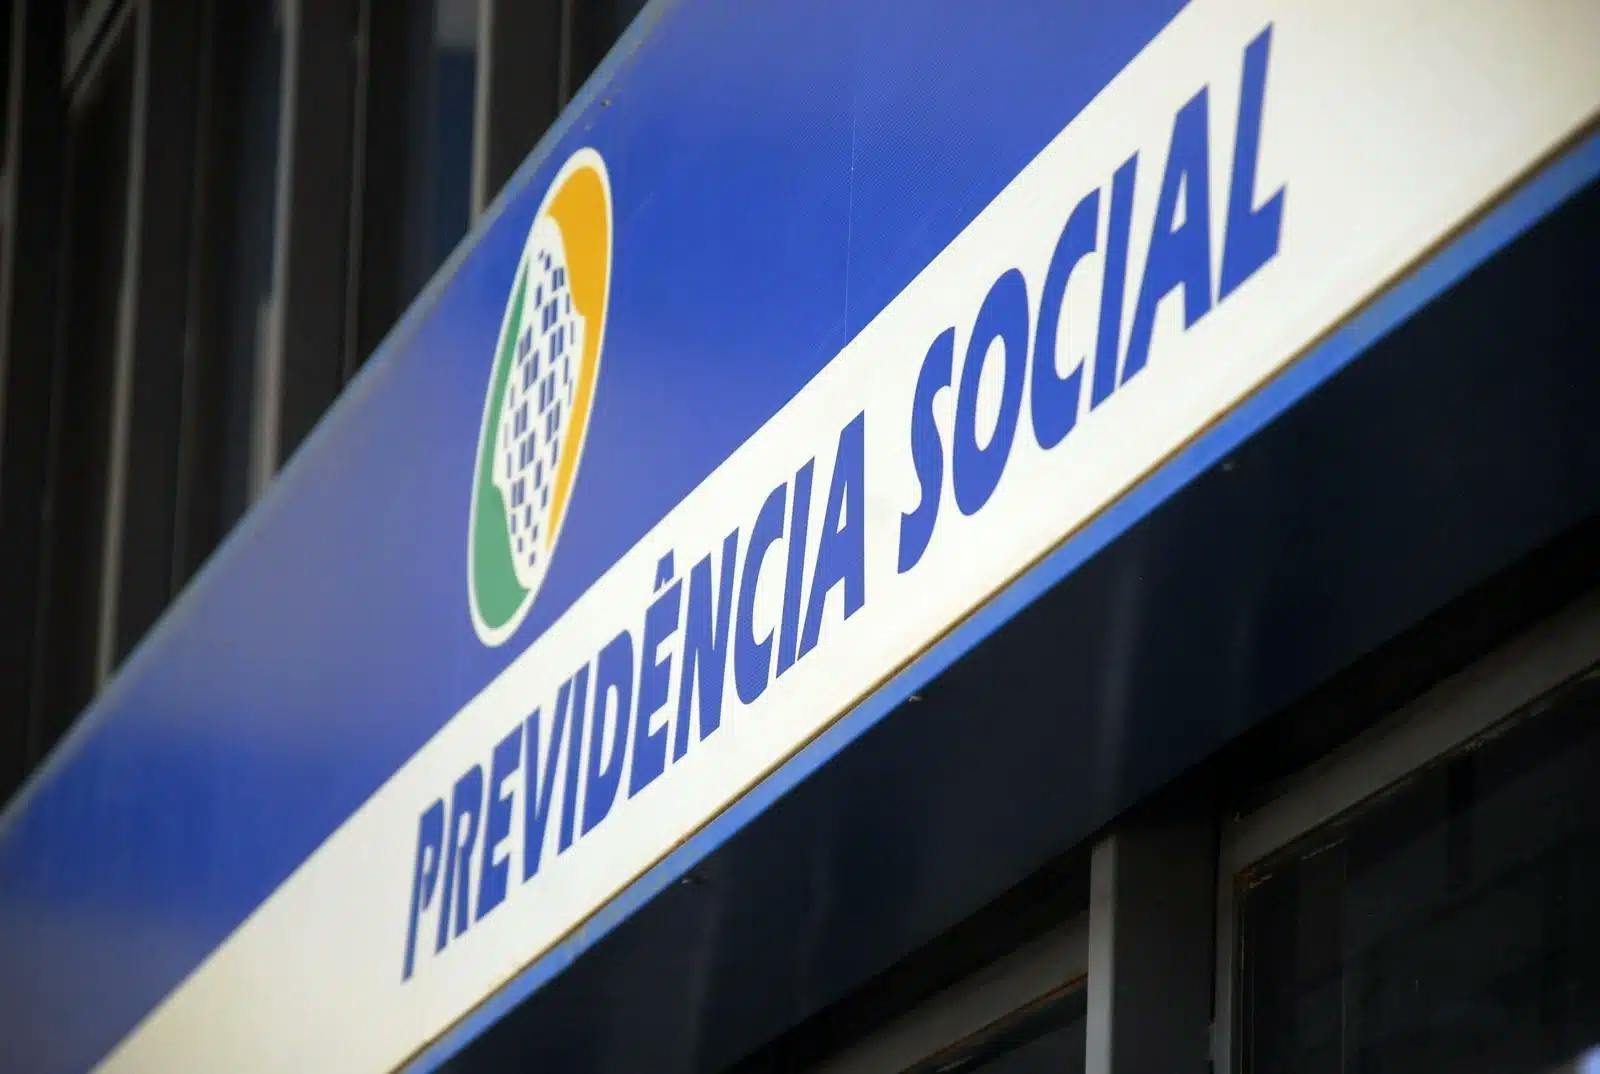 Confira as principais mudanças na proposta de reforma da previdência de Bolsonaro